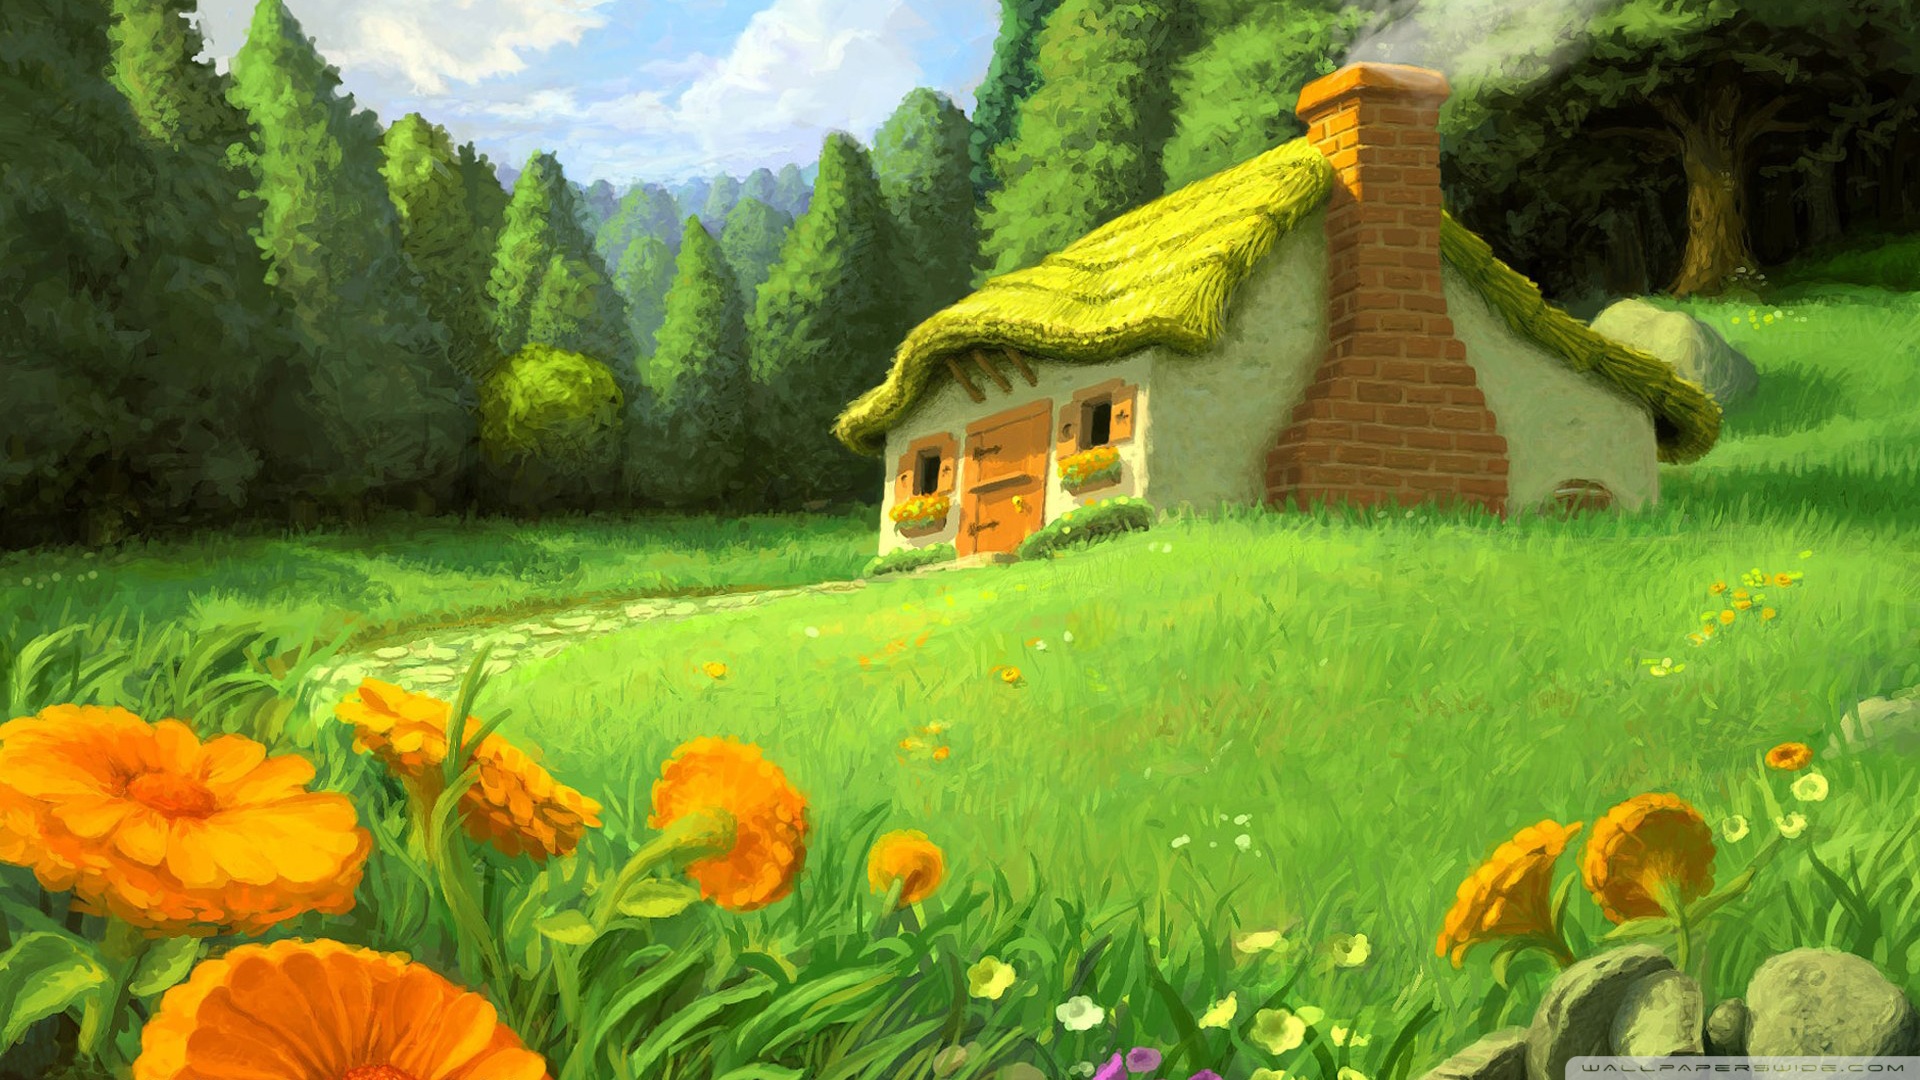 fantasy_landscape-wallpaper-1920x1080.jpg